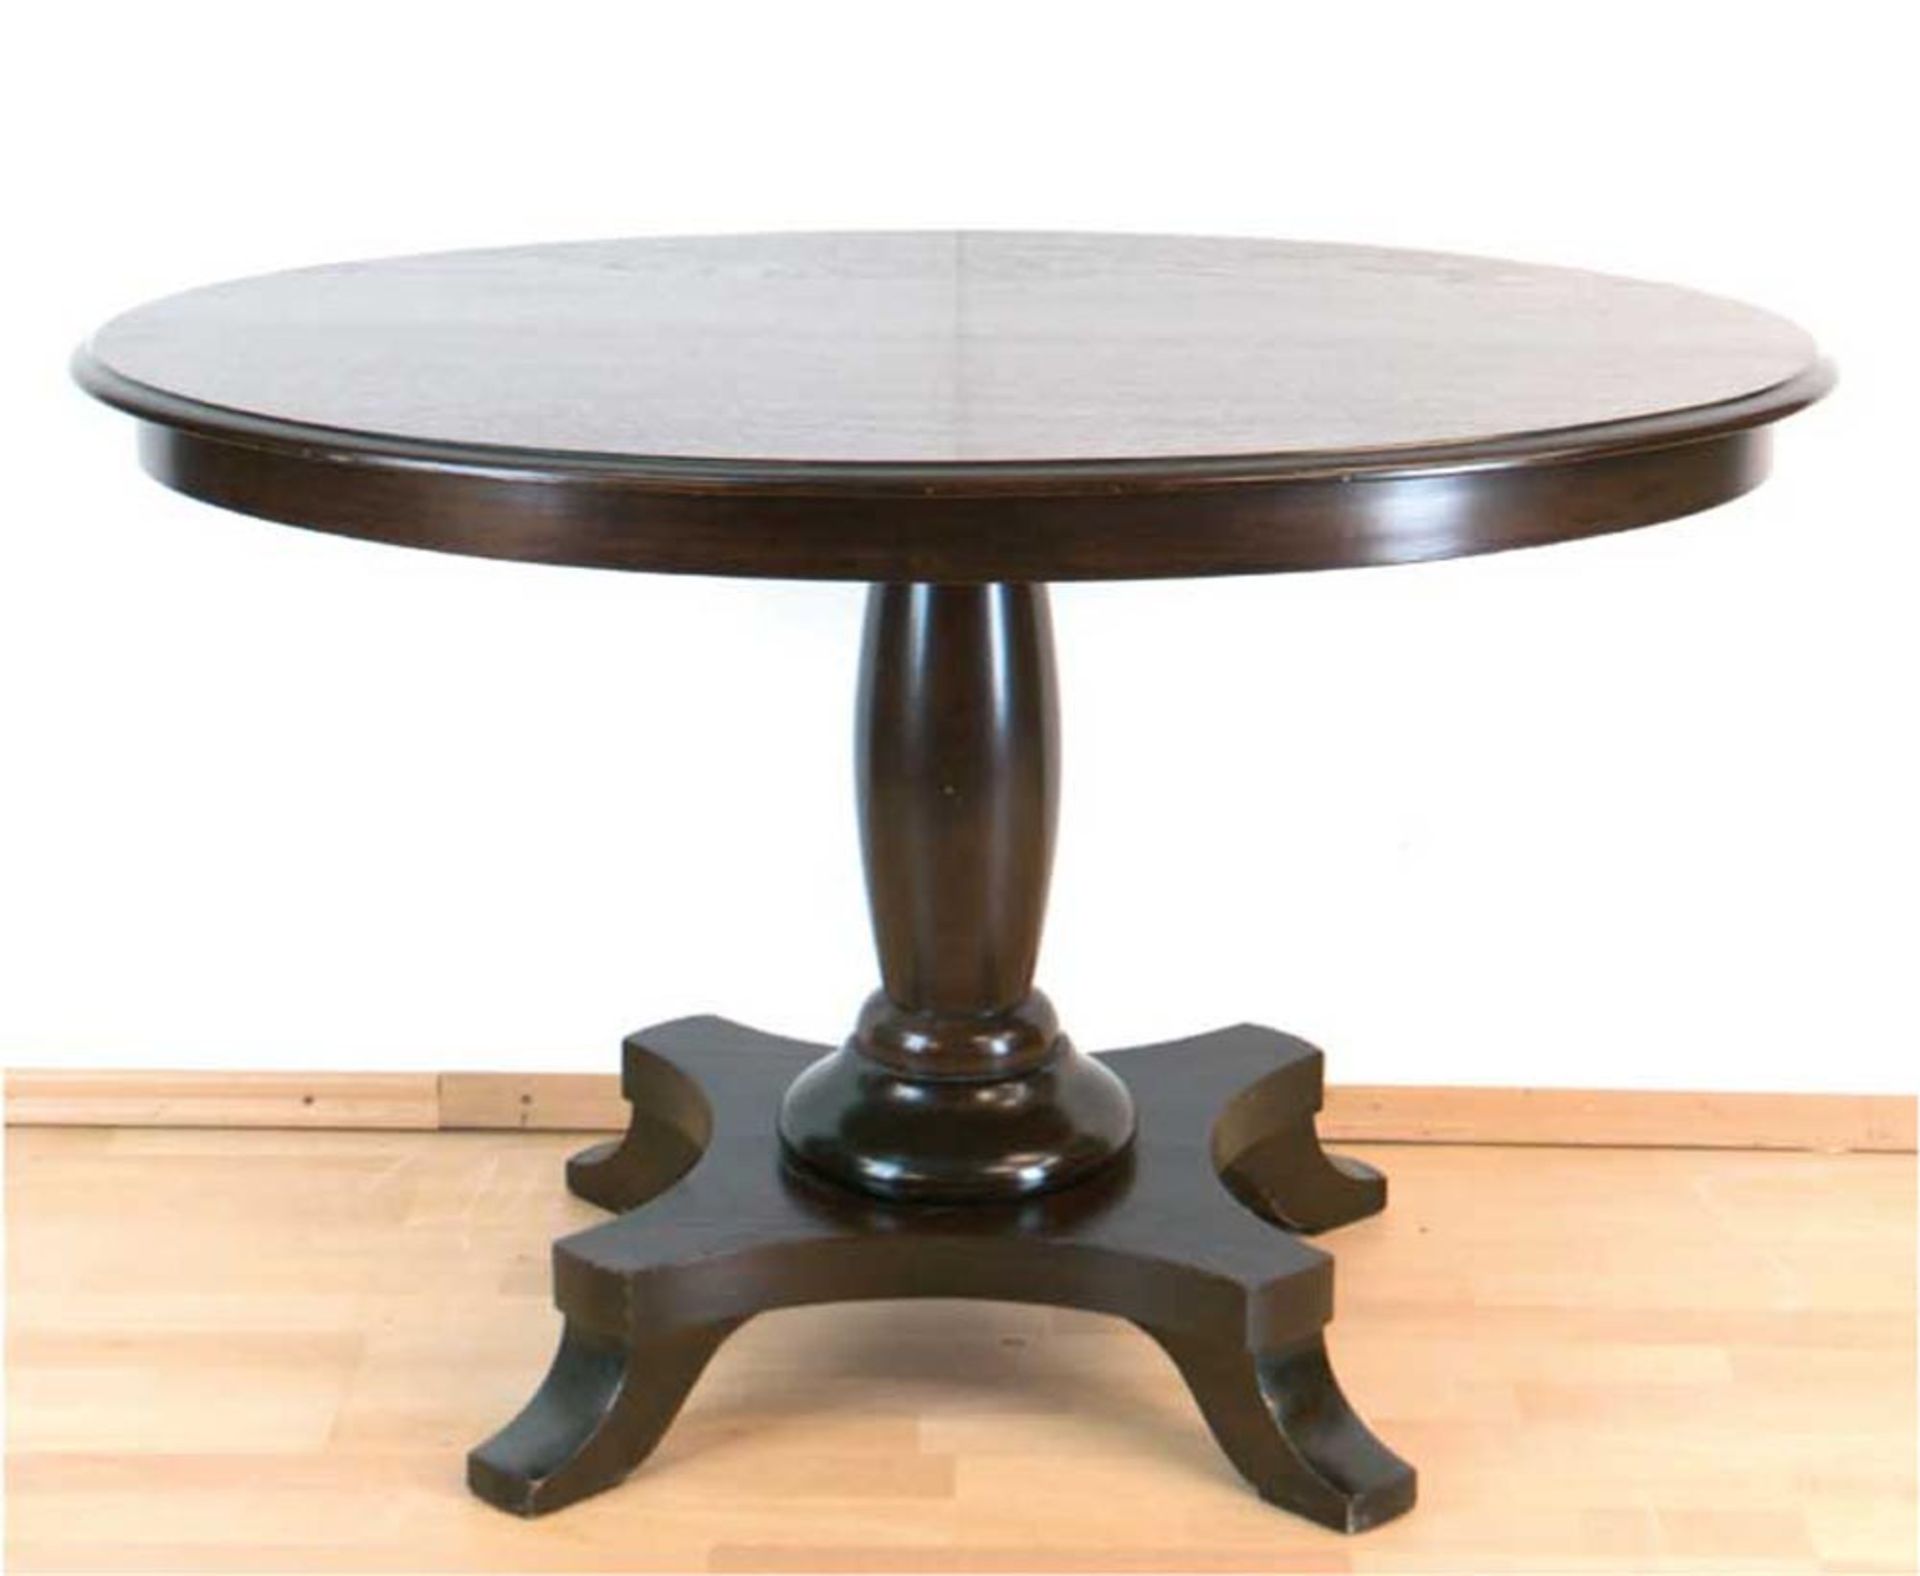 Biedermeier-Tisch, Mahagoni, über 4-passig eingebogter Fußplatte Balustersäule und ovalePl - Image 2 of 2